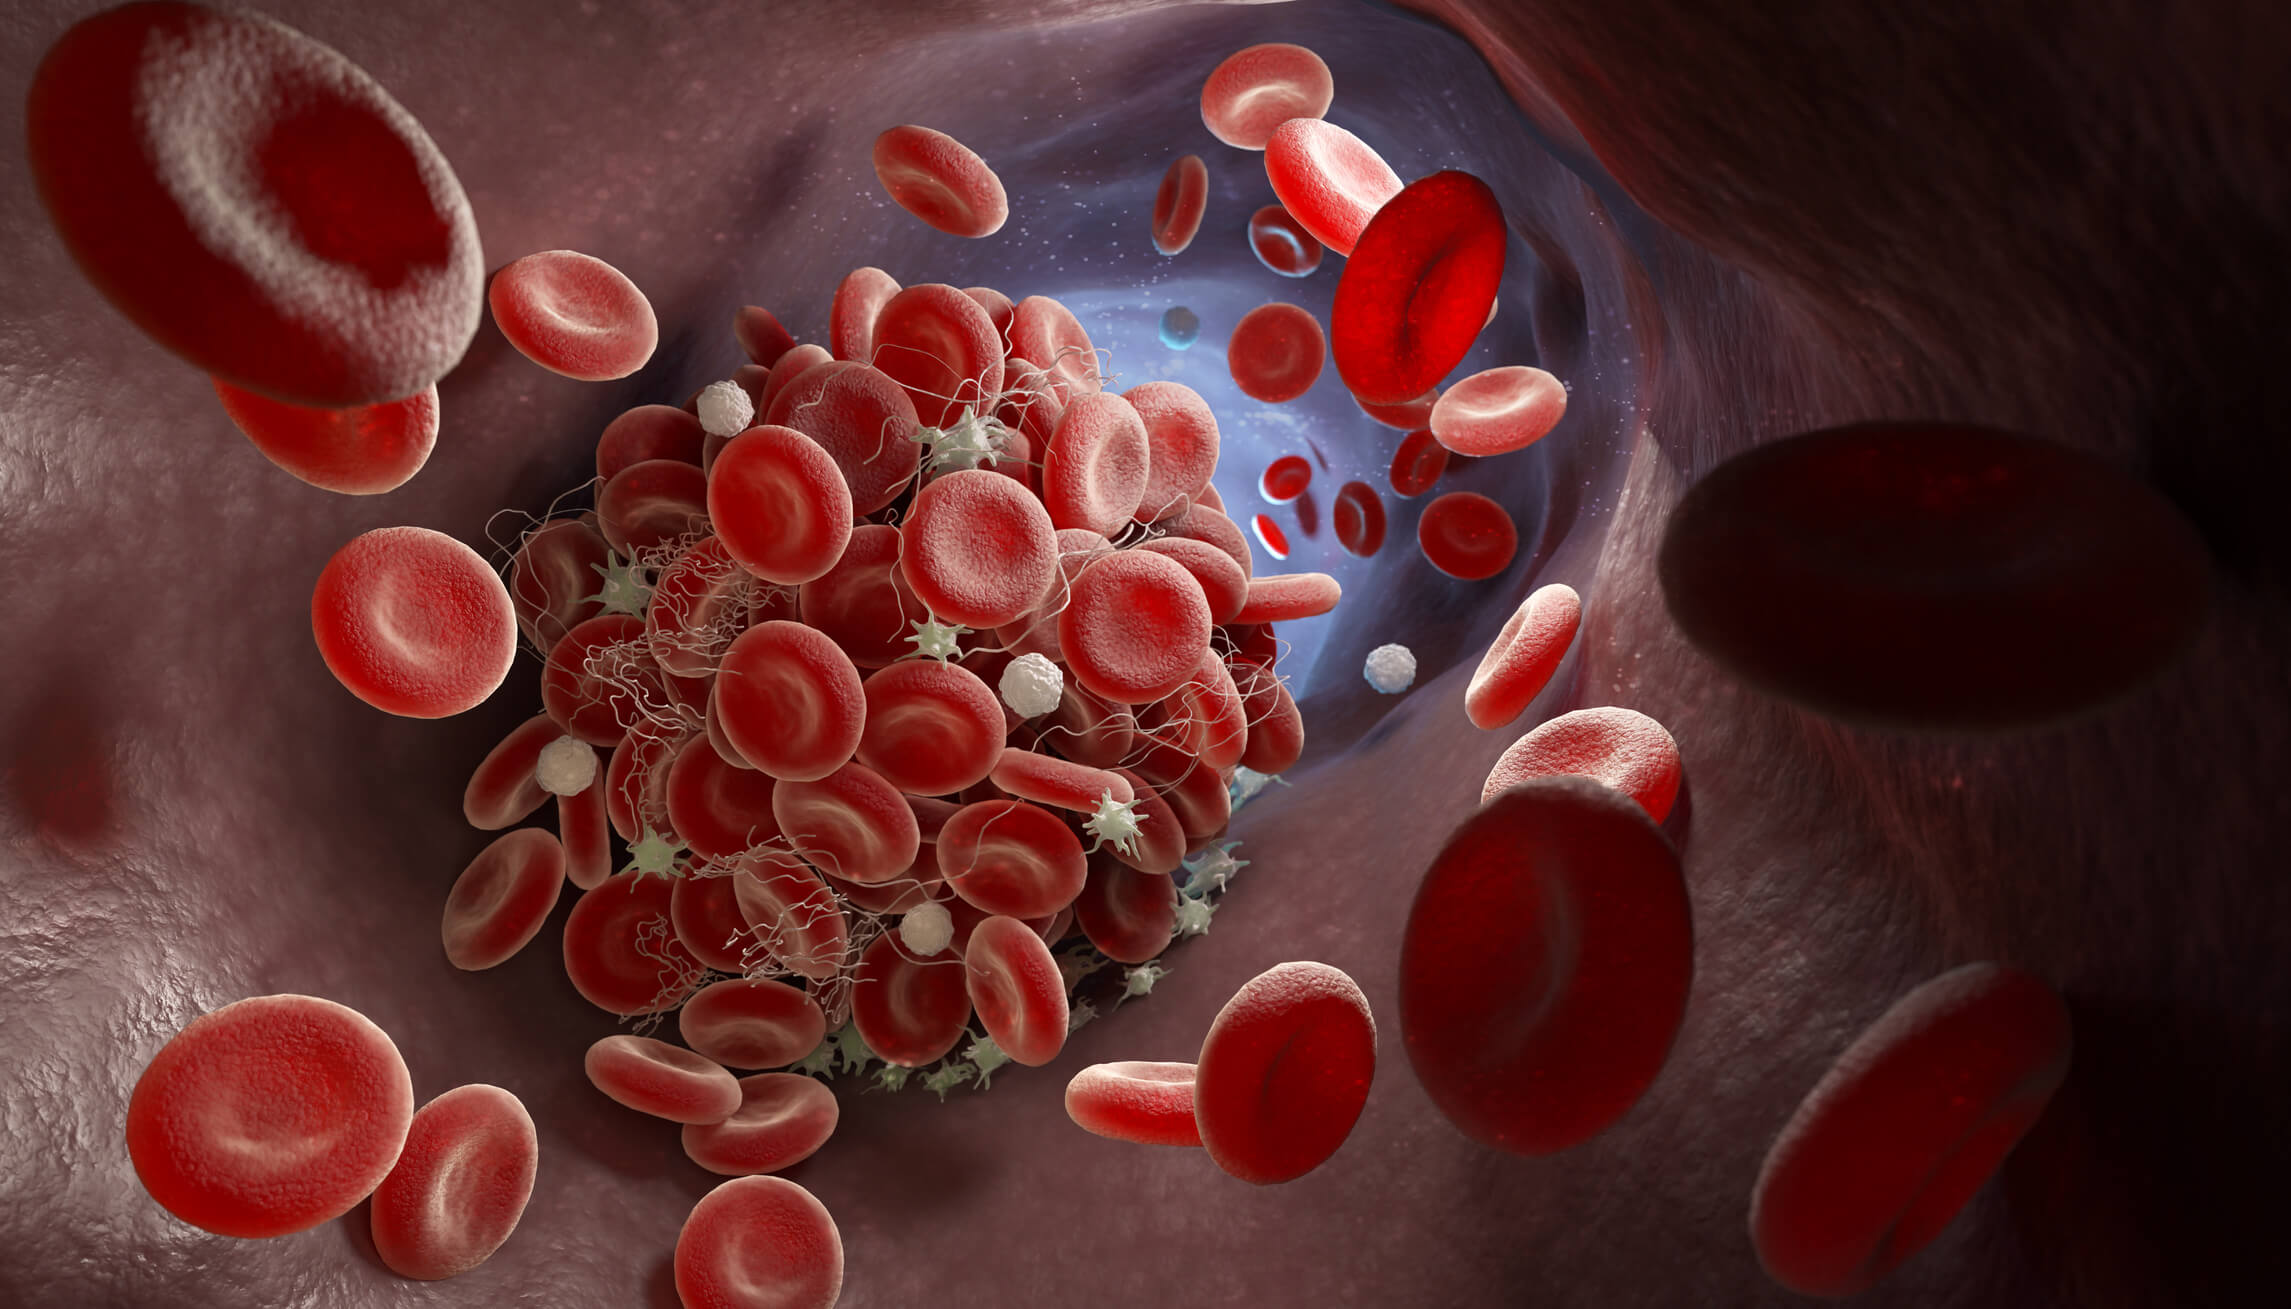 Du système immunitaire aux vaisseaux sanguins: comment limiter les thromboses lors d’infections sévères